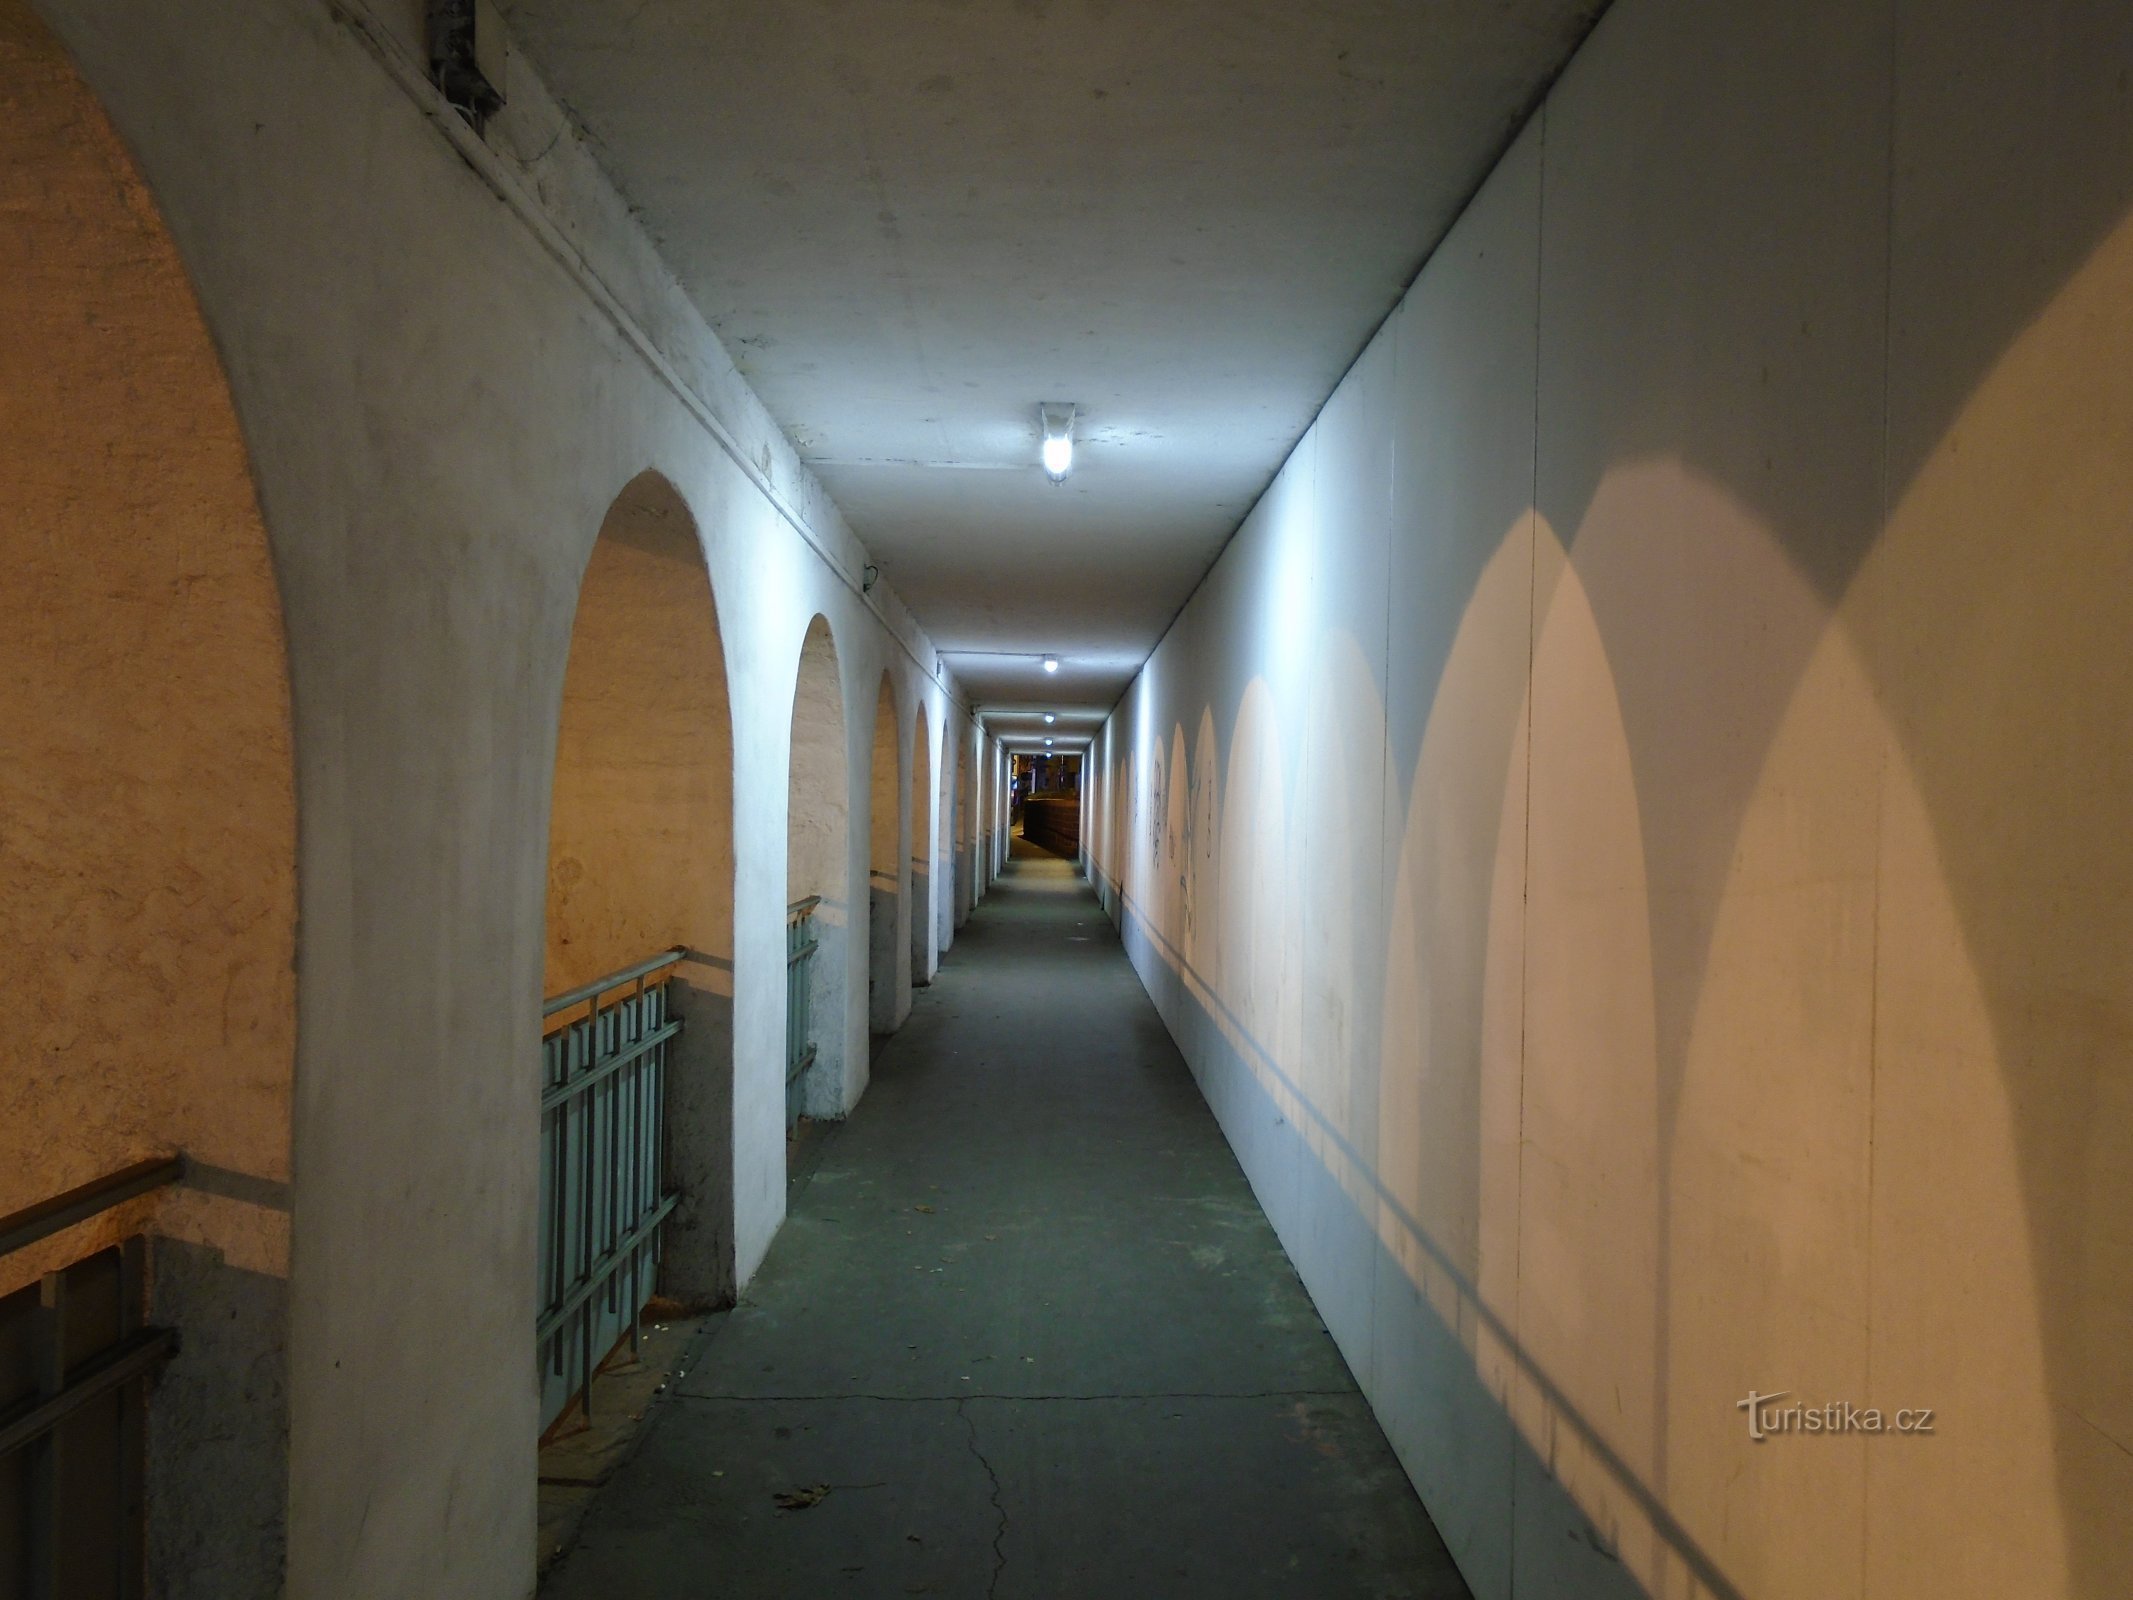 Подземный переход между Кукленами и пригородом Праги (Градец Кралове)